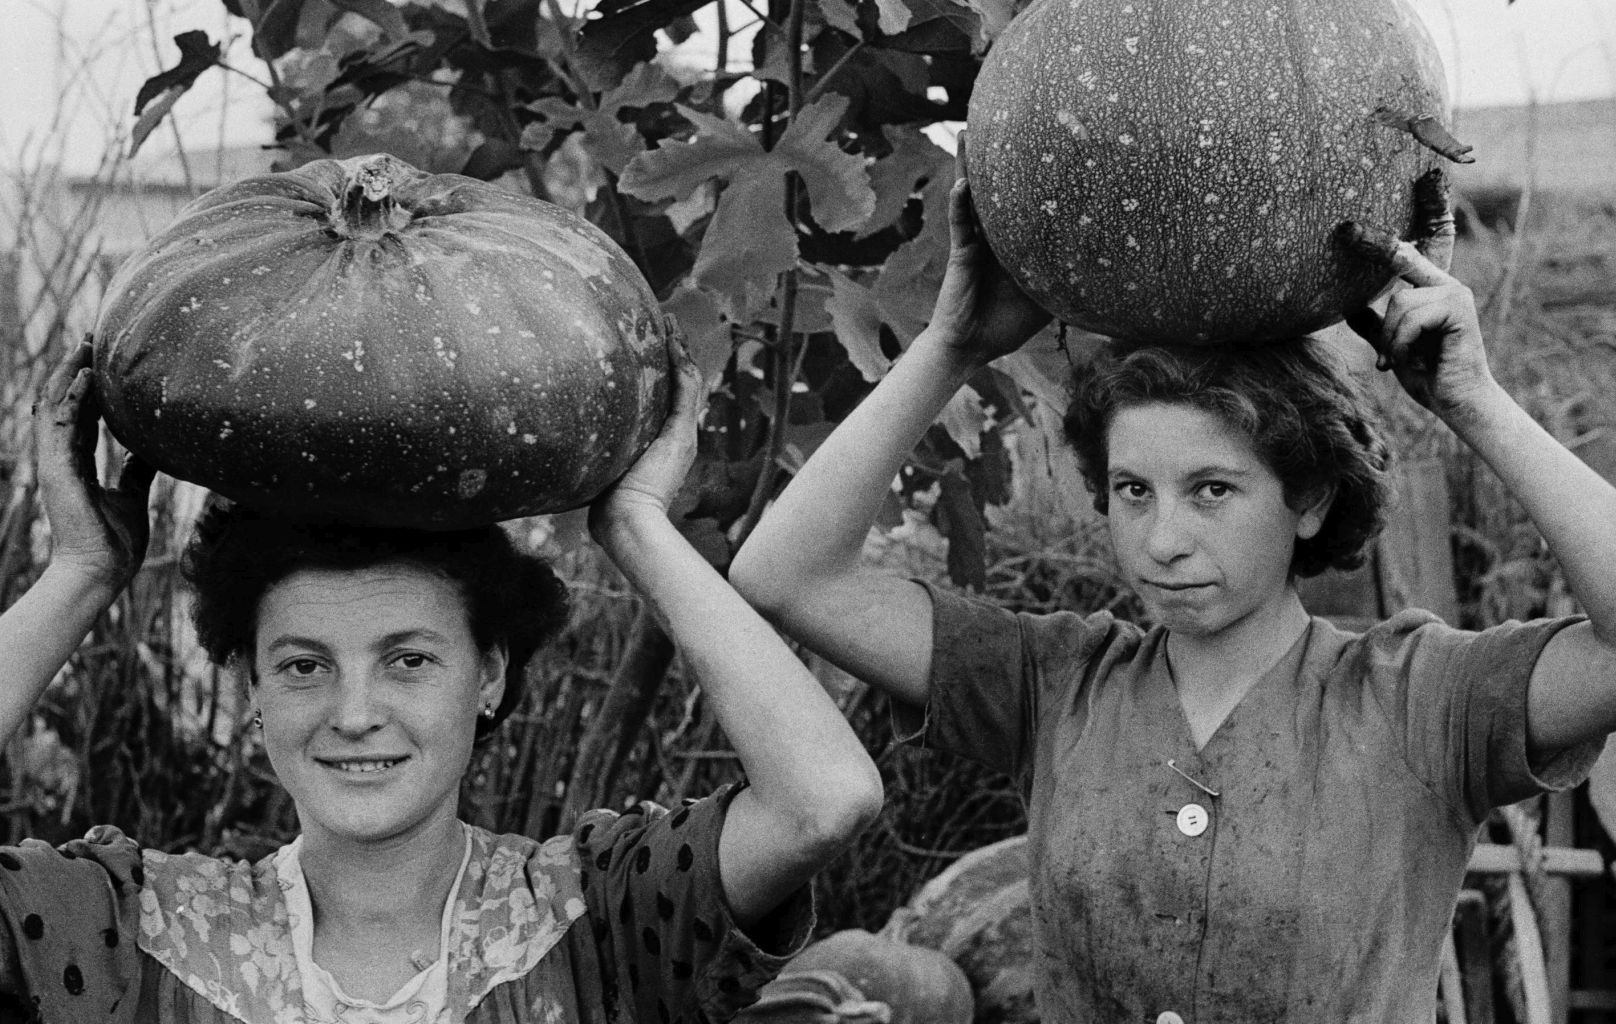 Ando Gilardi, Giovani donne portano zucche sulla testa.
Qualiano (Napoli), ottobre 1954. © Fototeca Gilardi